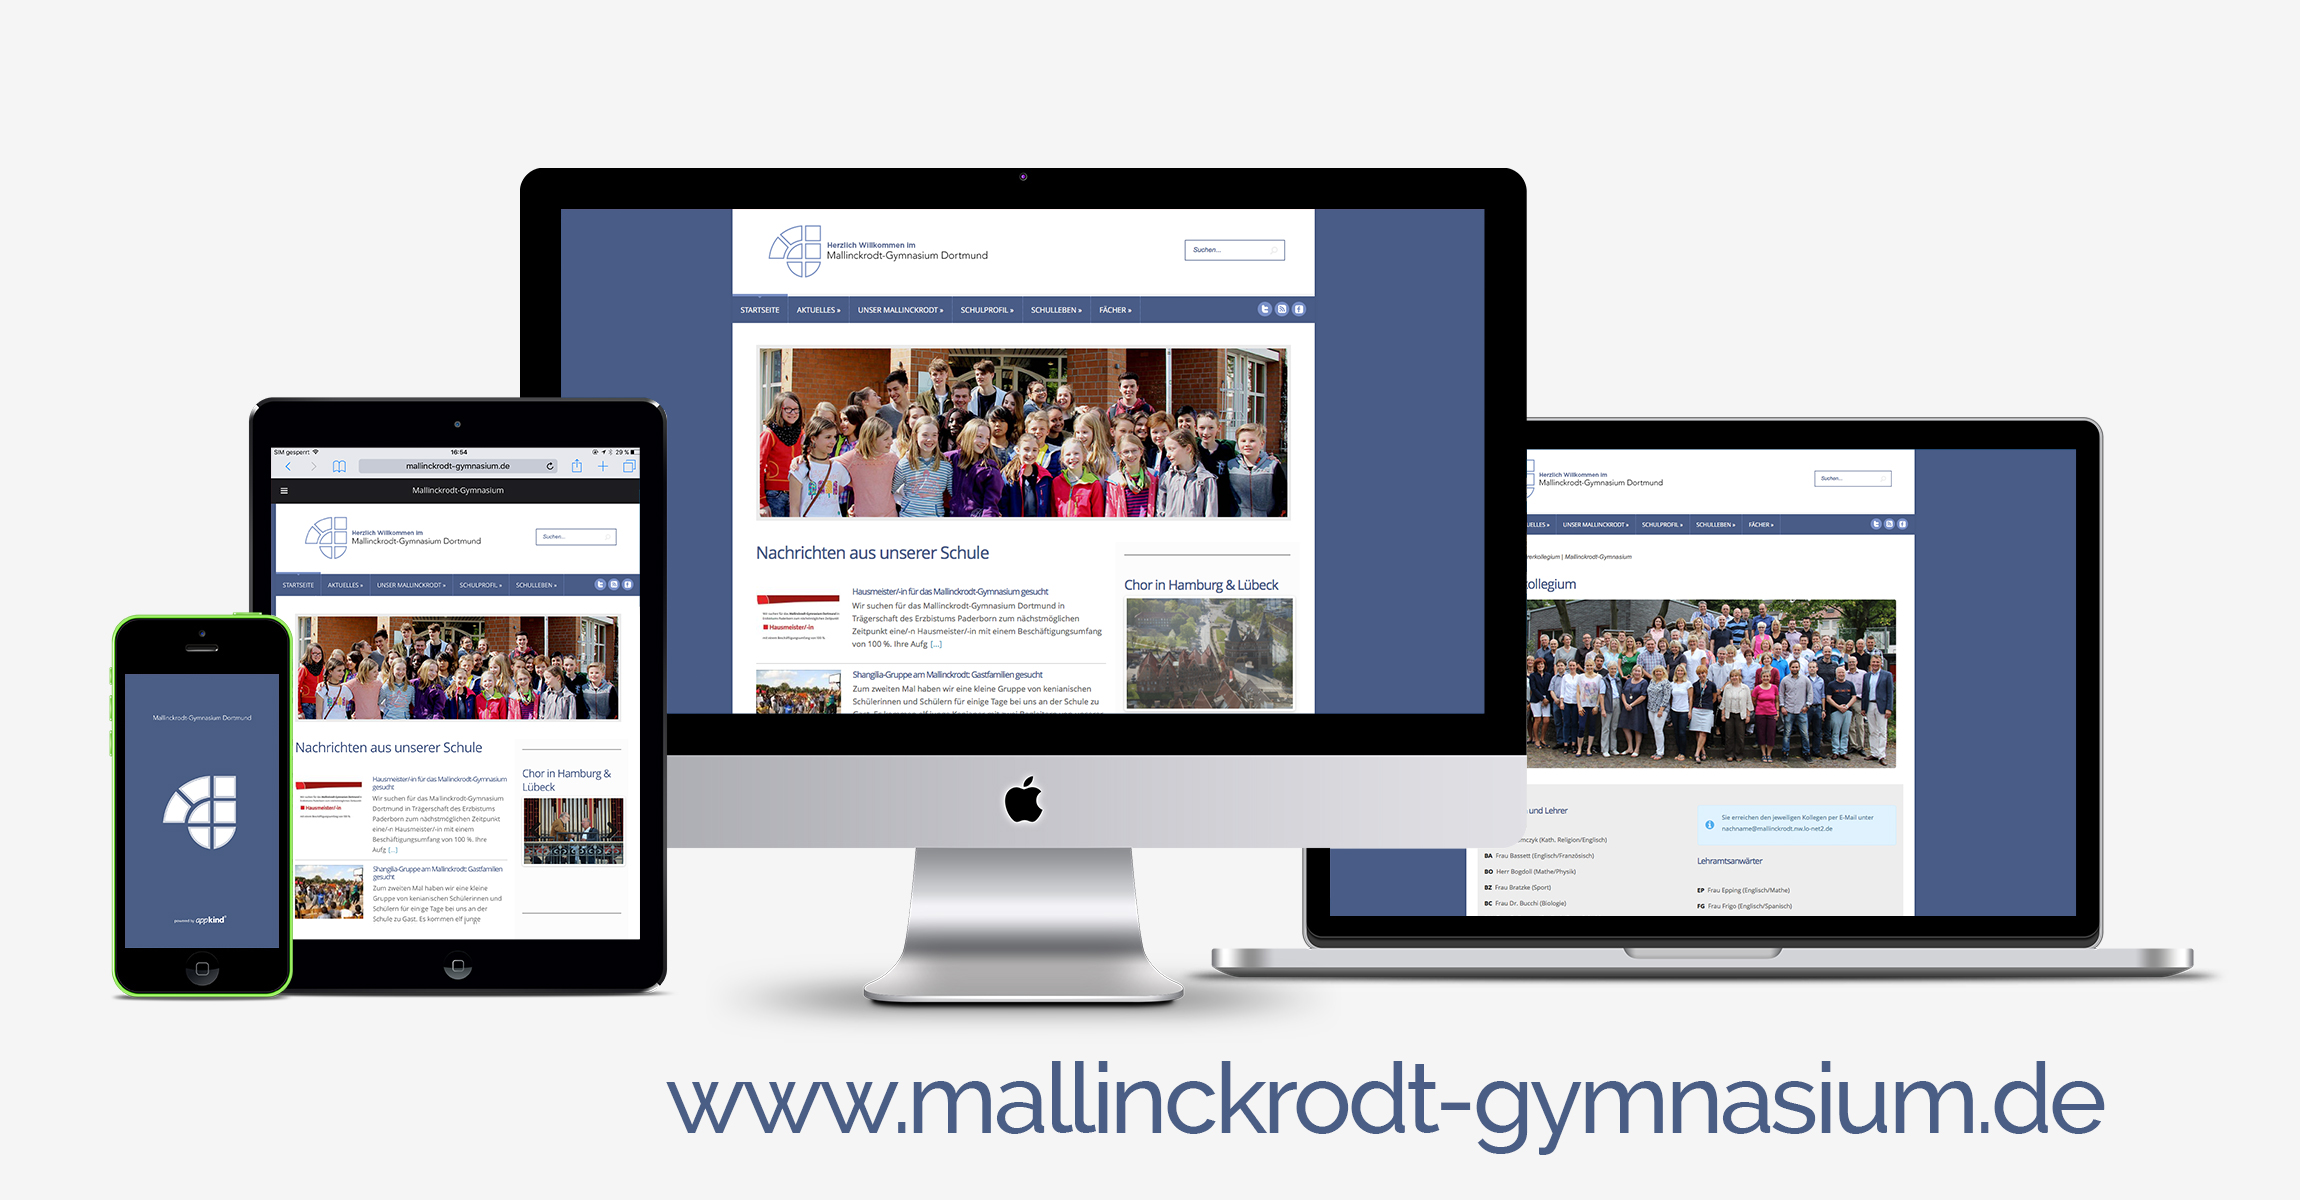 Eine Übersicht aller digitaler Darstellungen des Mallinckrodt-Gymnasiums